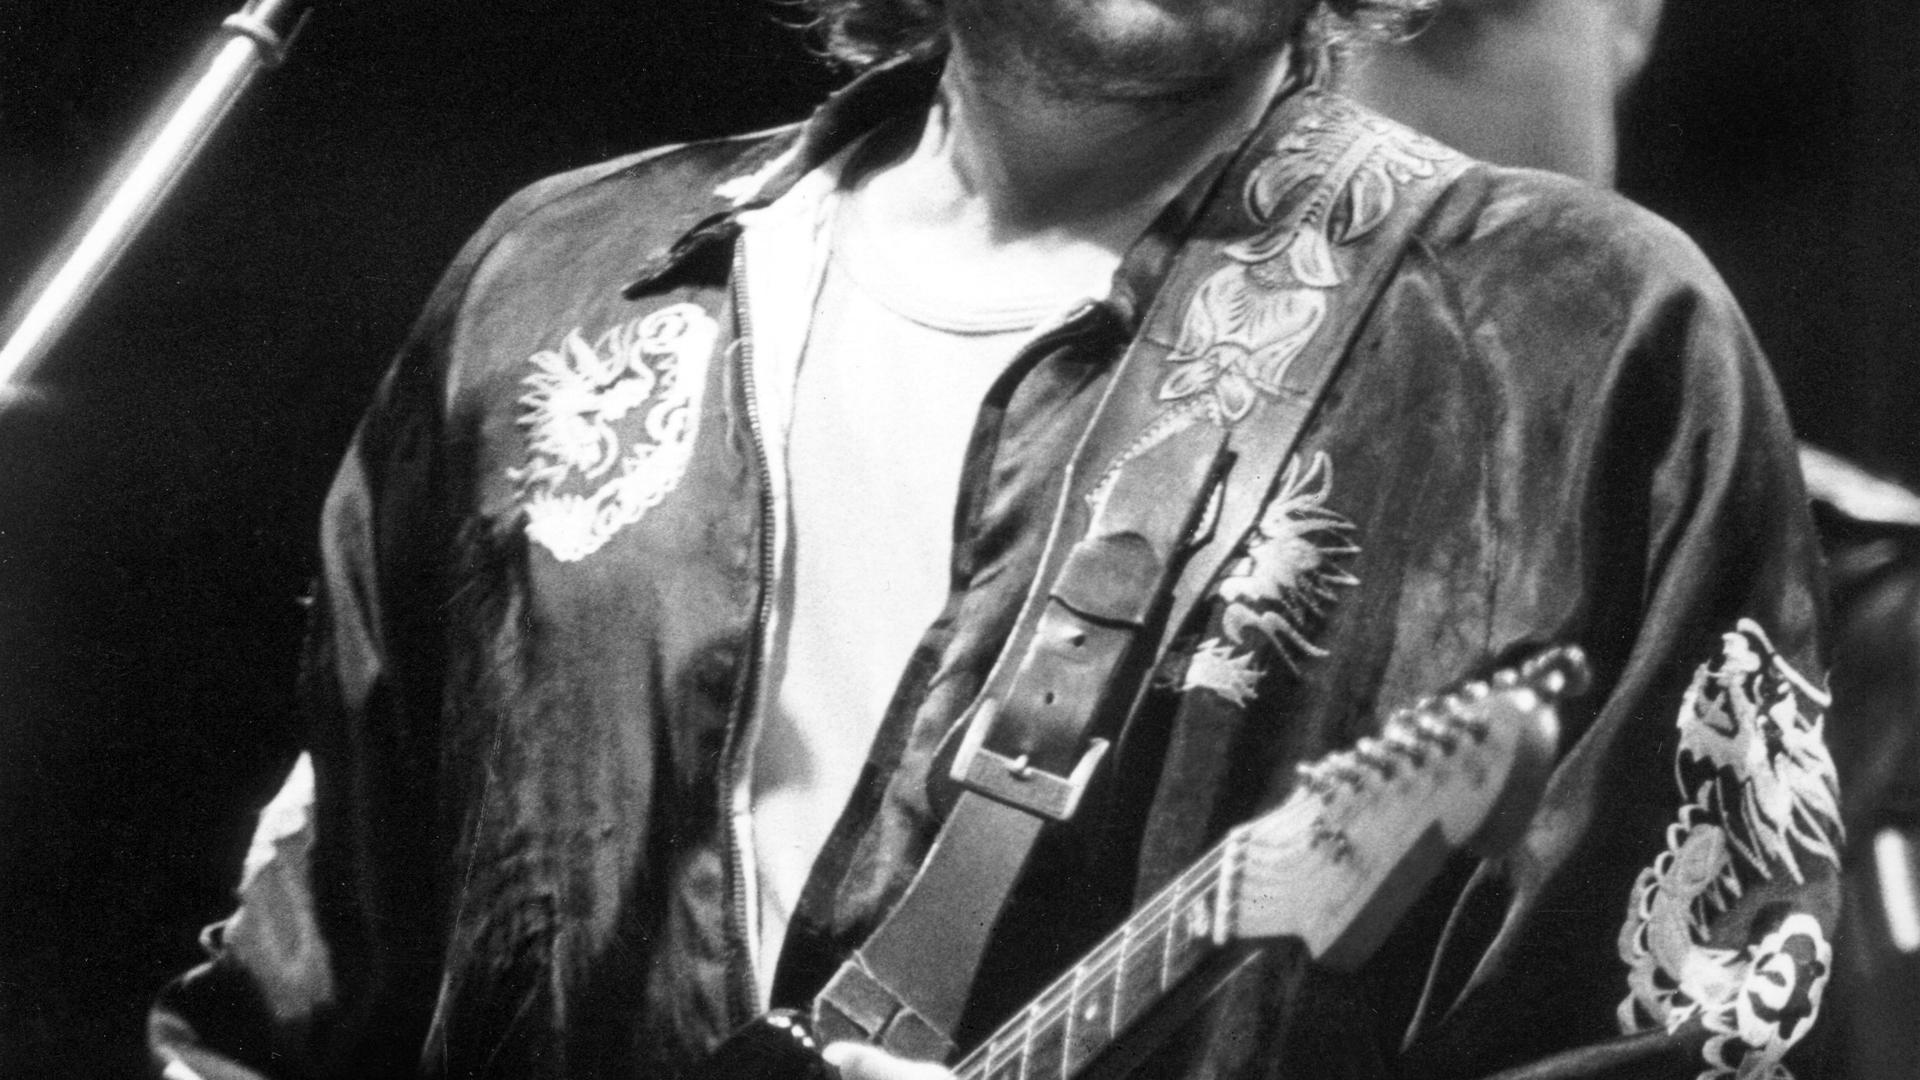 ARCHIV - Der amerikanische Folk- und Rockmusiker Bob Dylan tritt im Rahmen seiner Deutschland-Tournee am 29.07.1981 in München (Bayern) auf. Foto: Frank Leonhard/dpa (zu dpa "Literaturnobelpreis geht an Bob Dylan" vom 13.10.2016) +++ dpa-Bildfunk +++